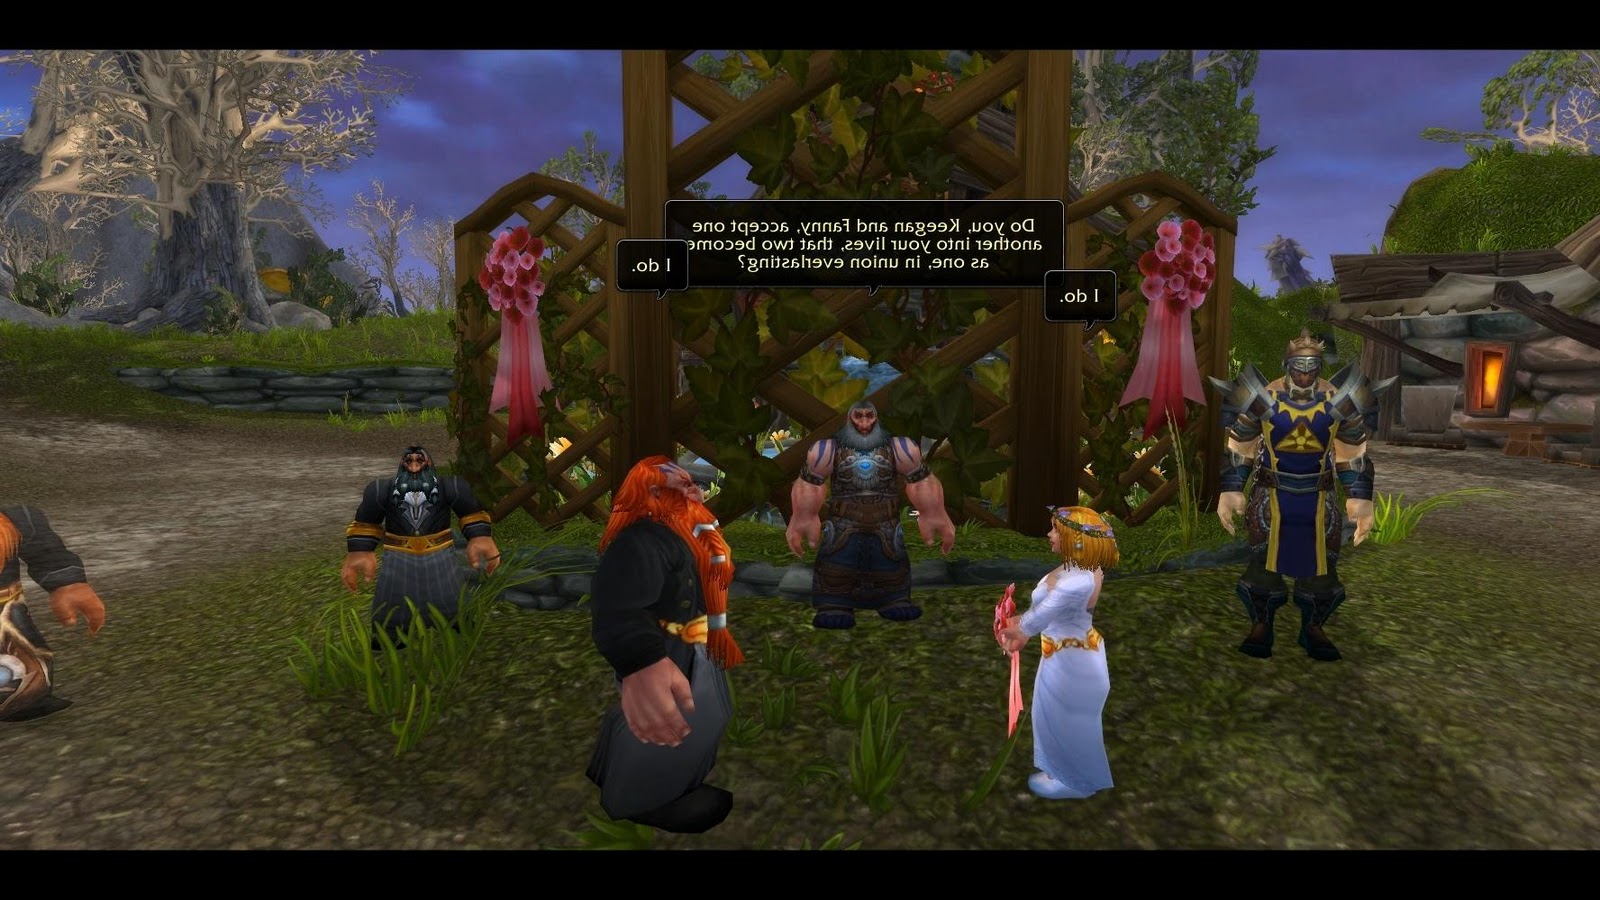 of Warcraft ingame virtual